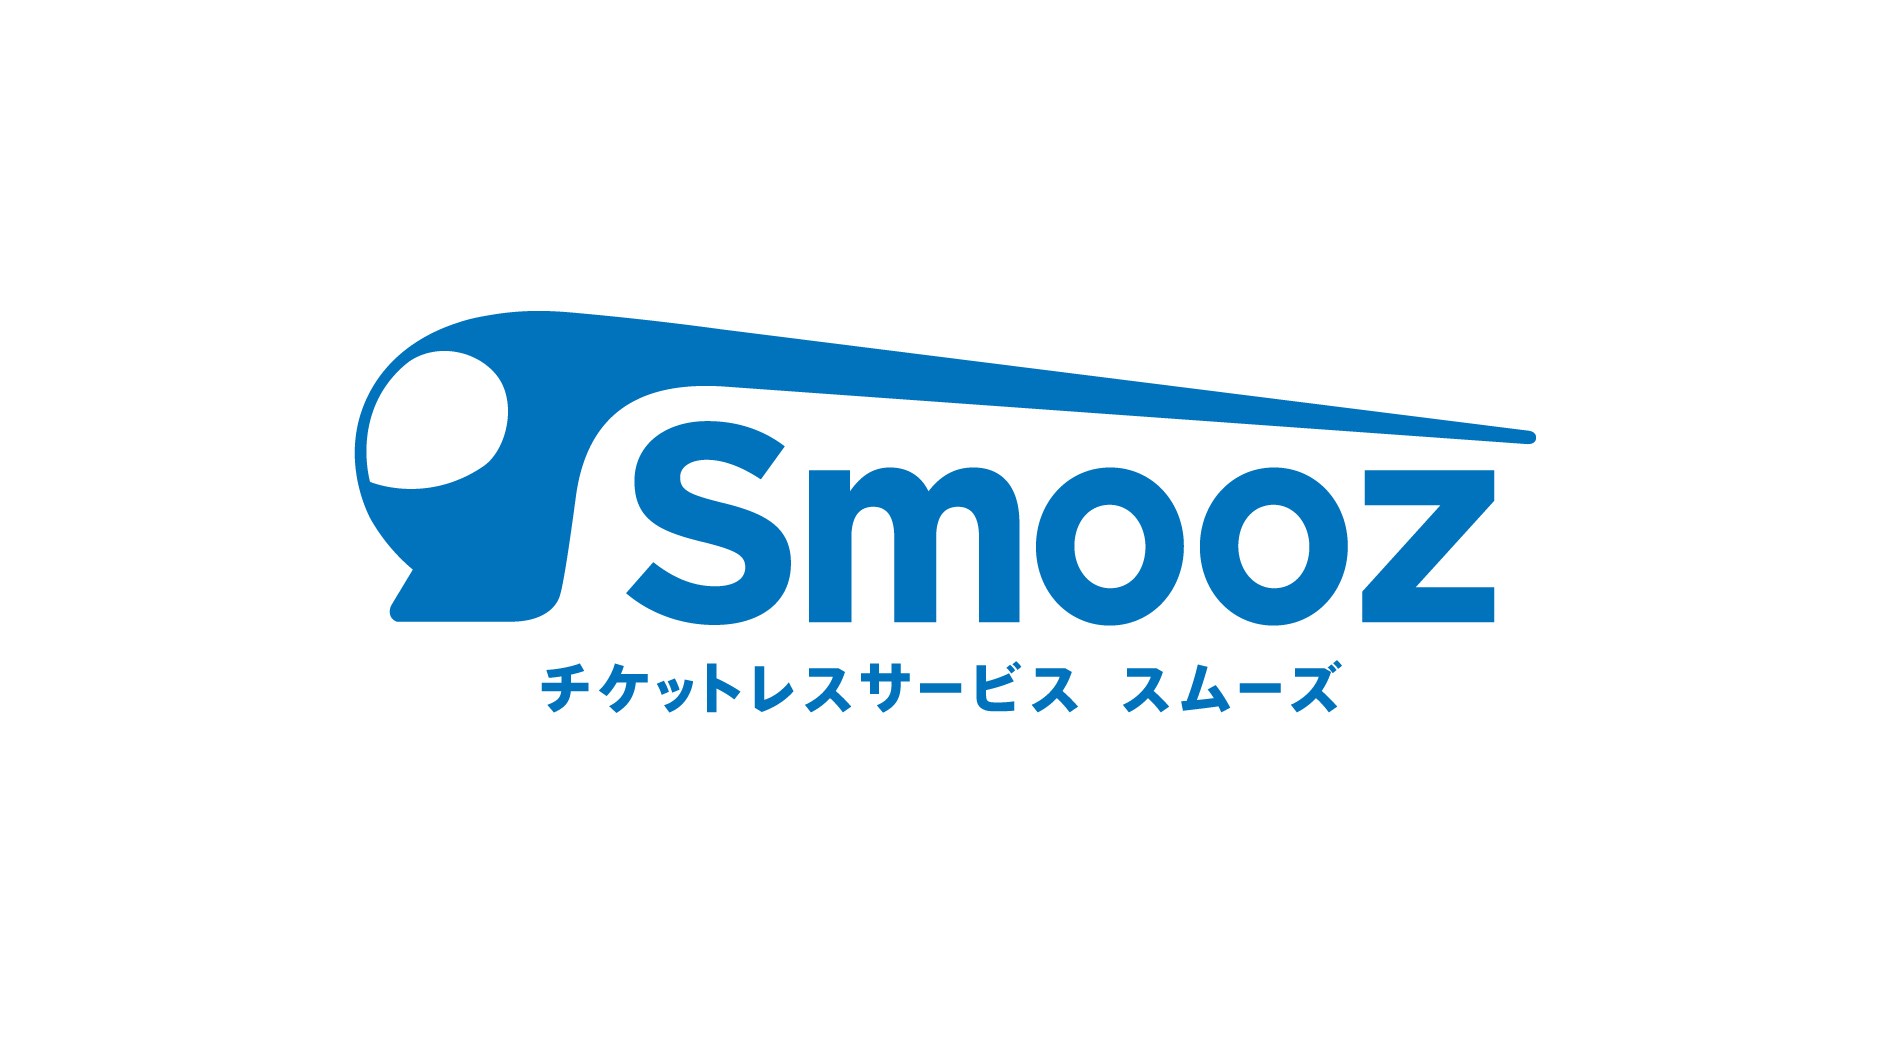 チケットレスサービス「Smooz」会員10万人突破を記念しておトクなキャンペーンを実施します！